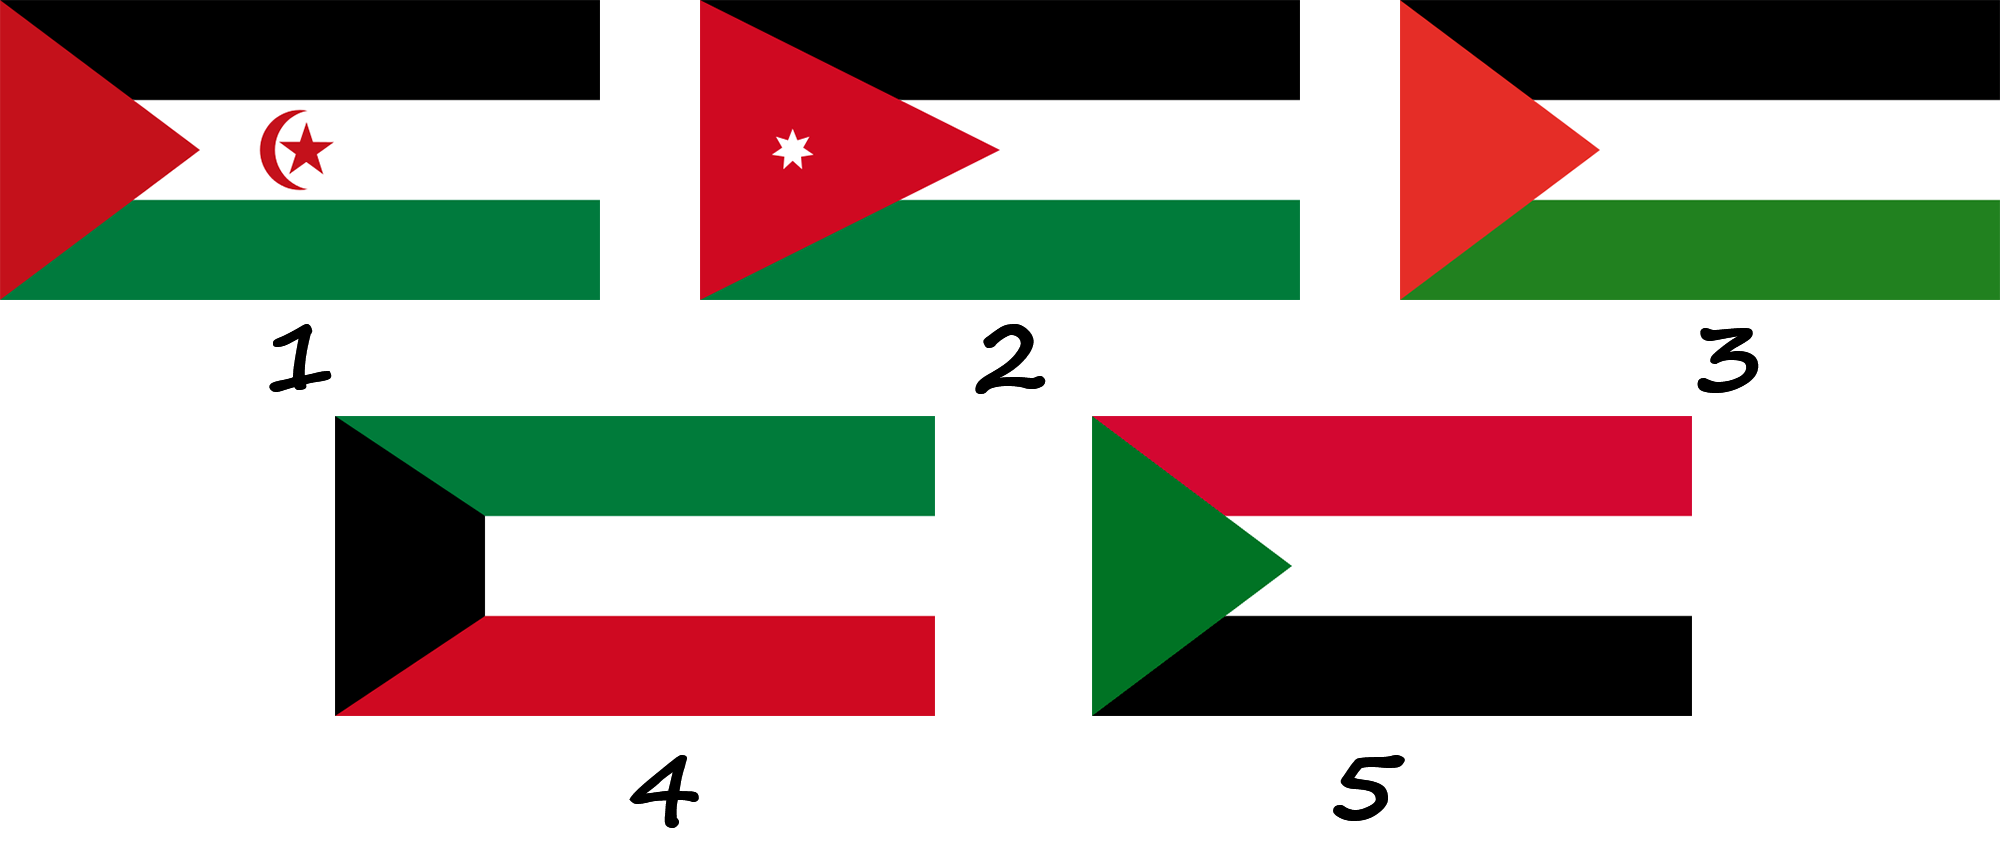 À quels drapeaux le drapeau des Émirats arabes unis ressemble-t-il ?